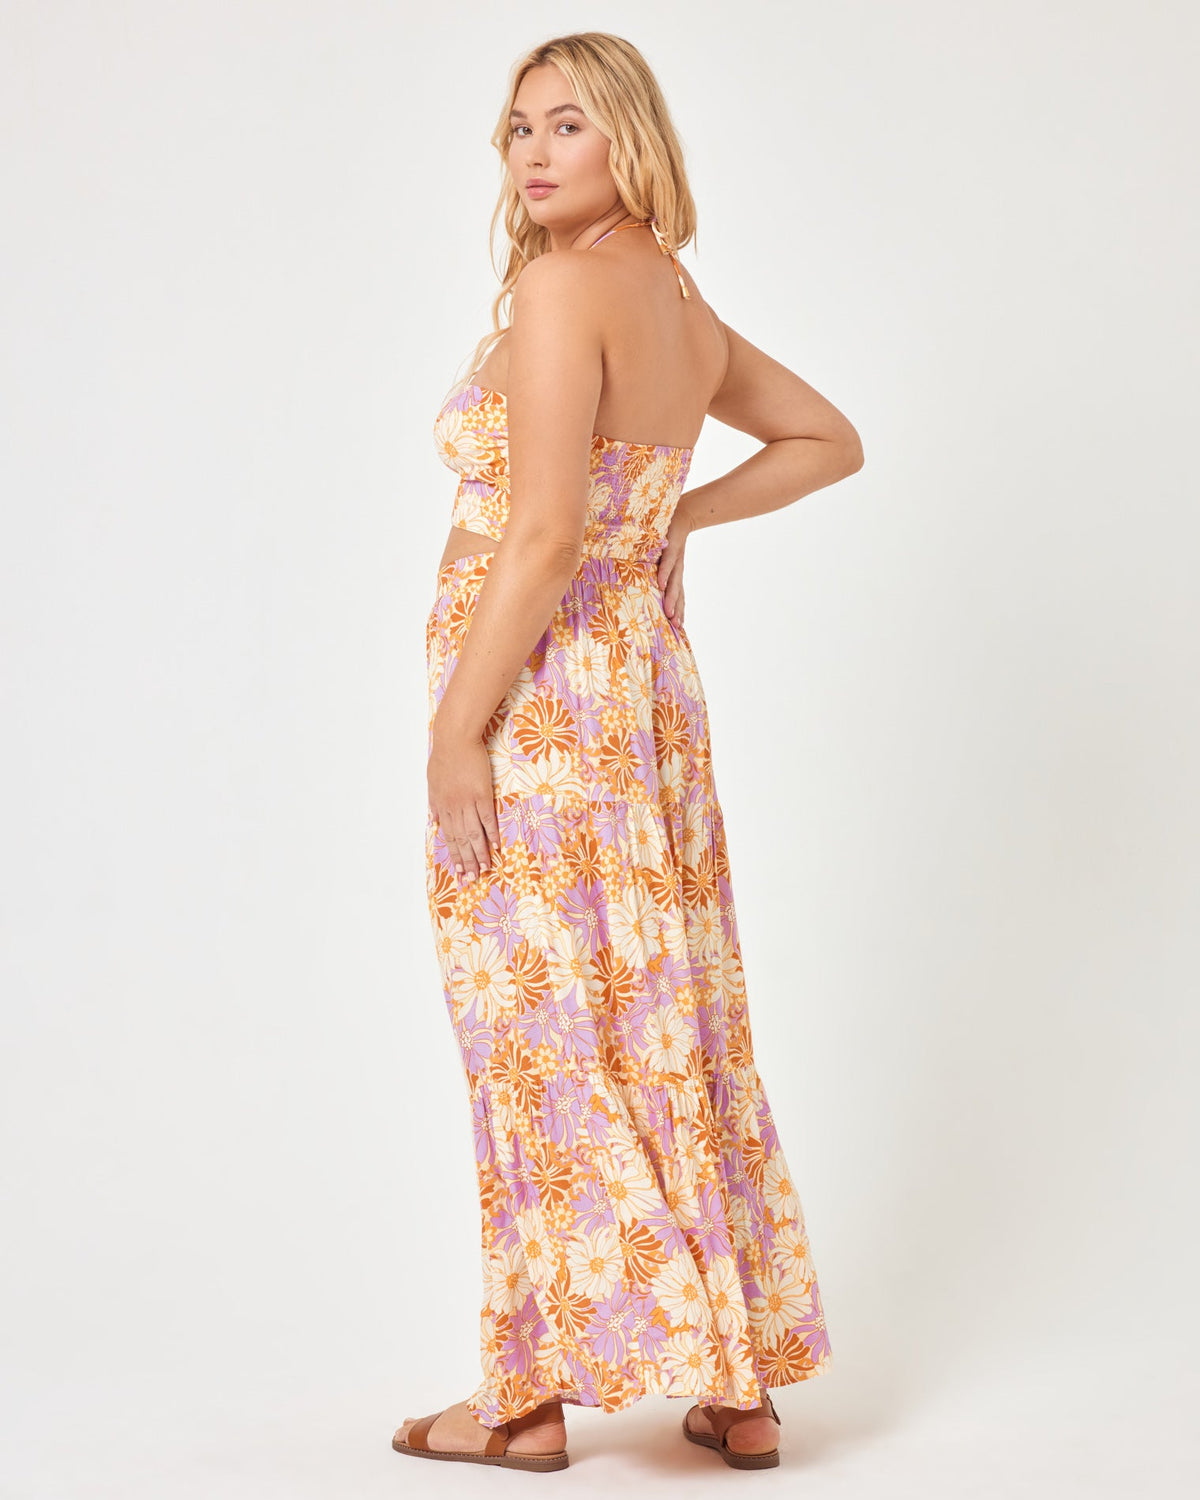 Bondi Skirt Wavy Daisy | Model: Sydney (size: XL)